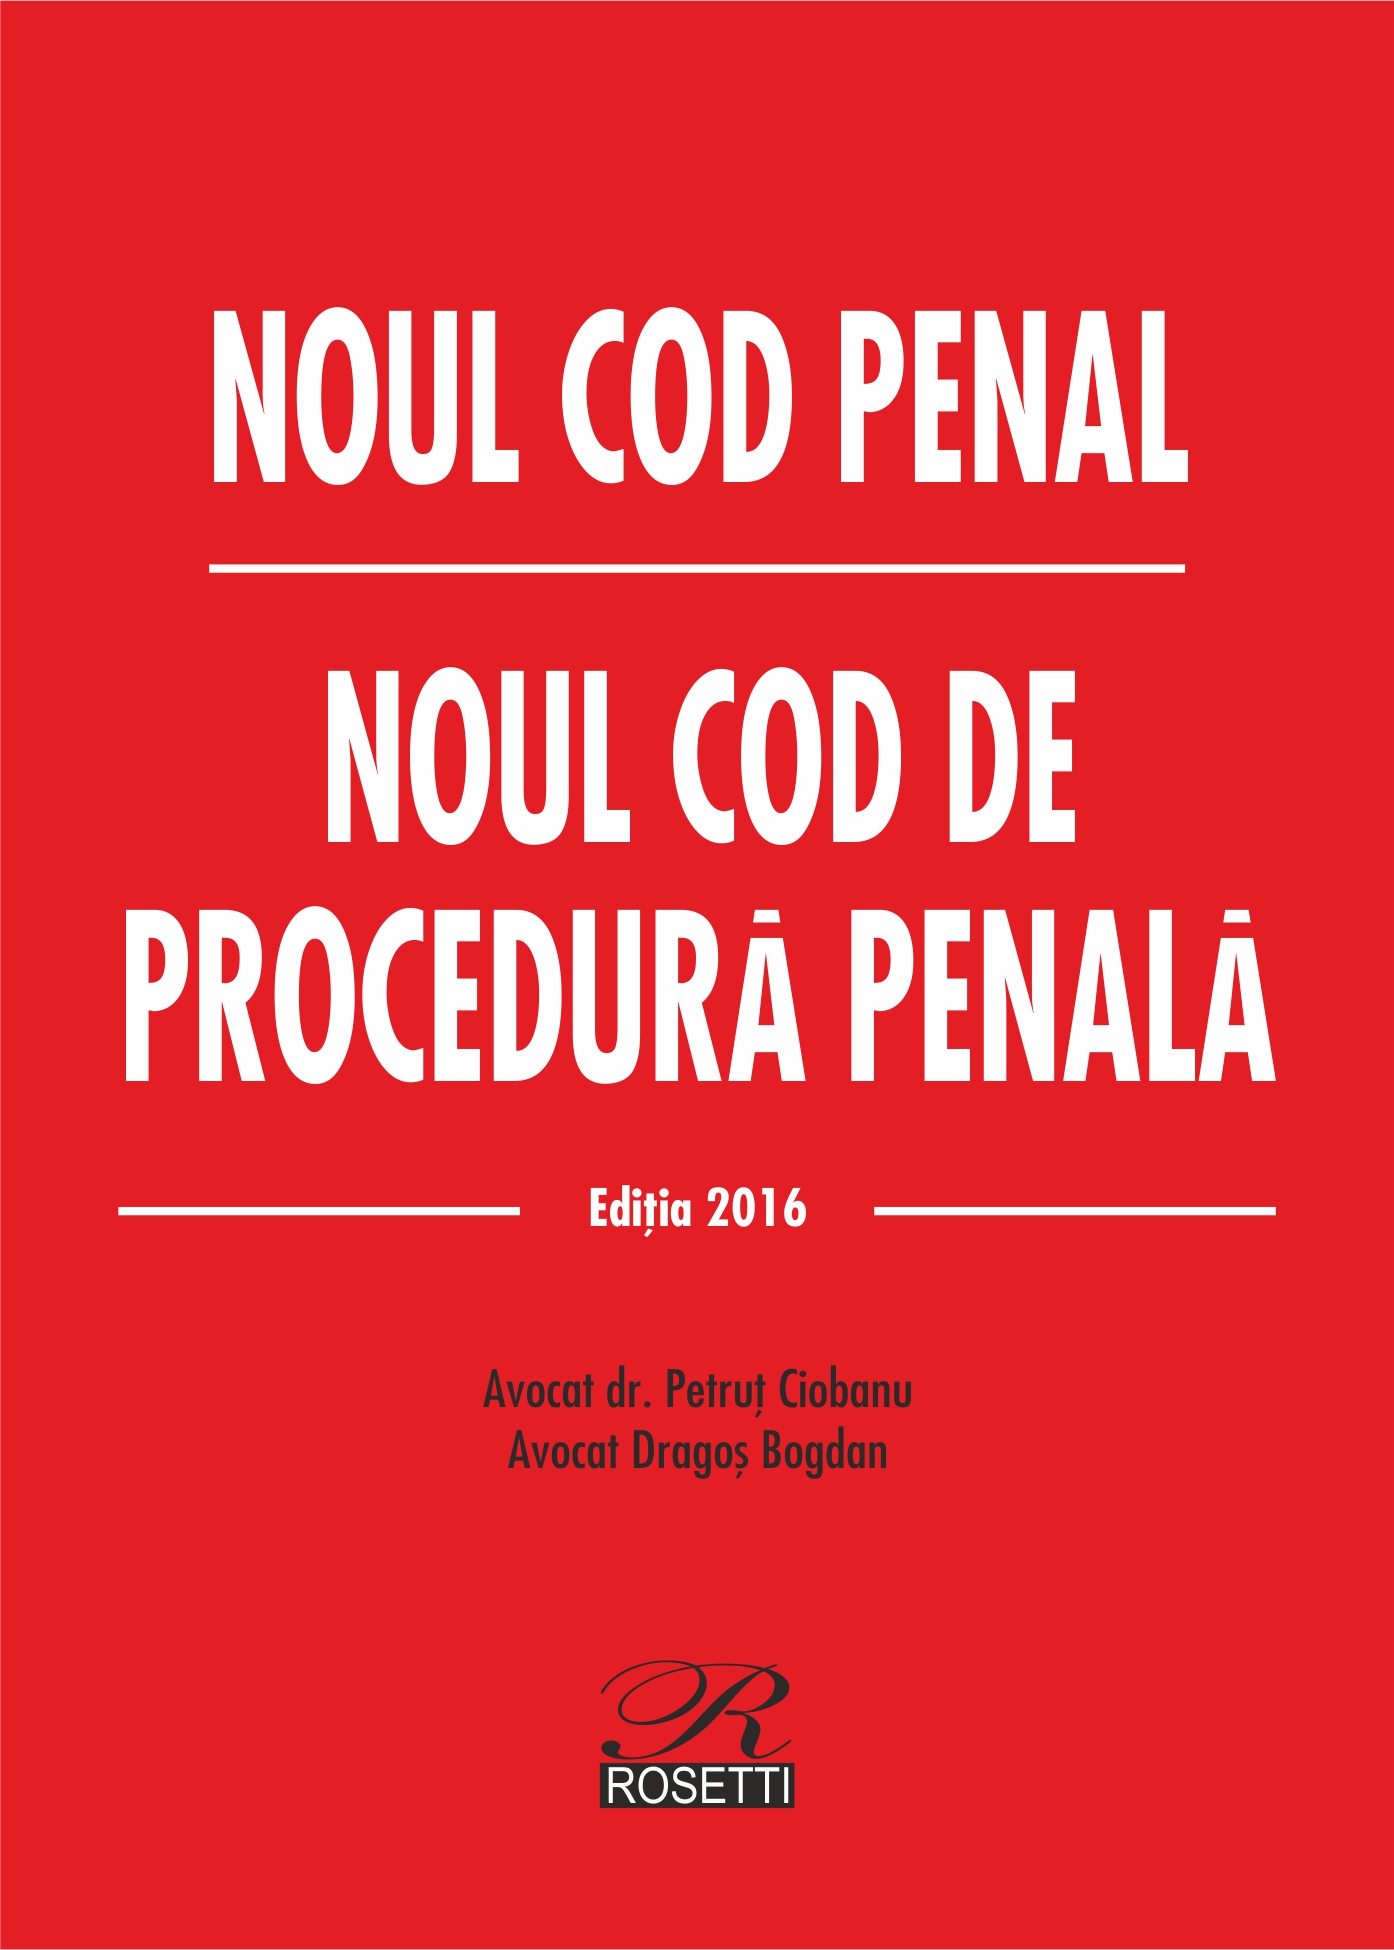 Noul Cod penal. Noul Cod de procedura penala - Editie 2016